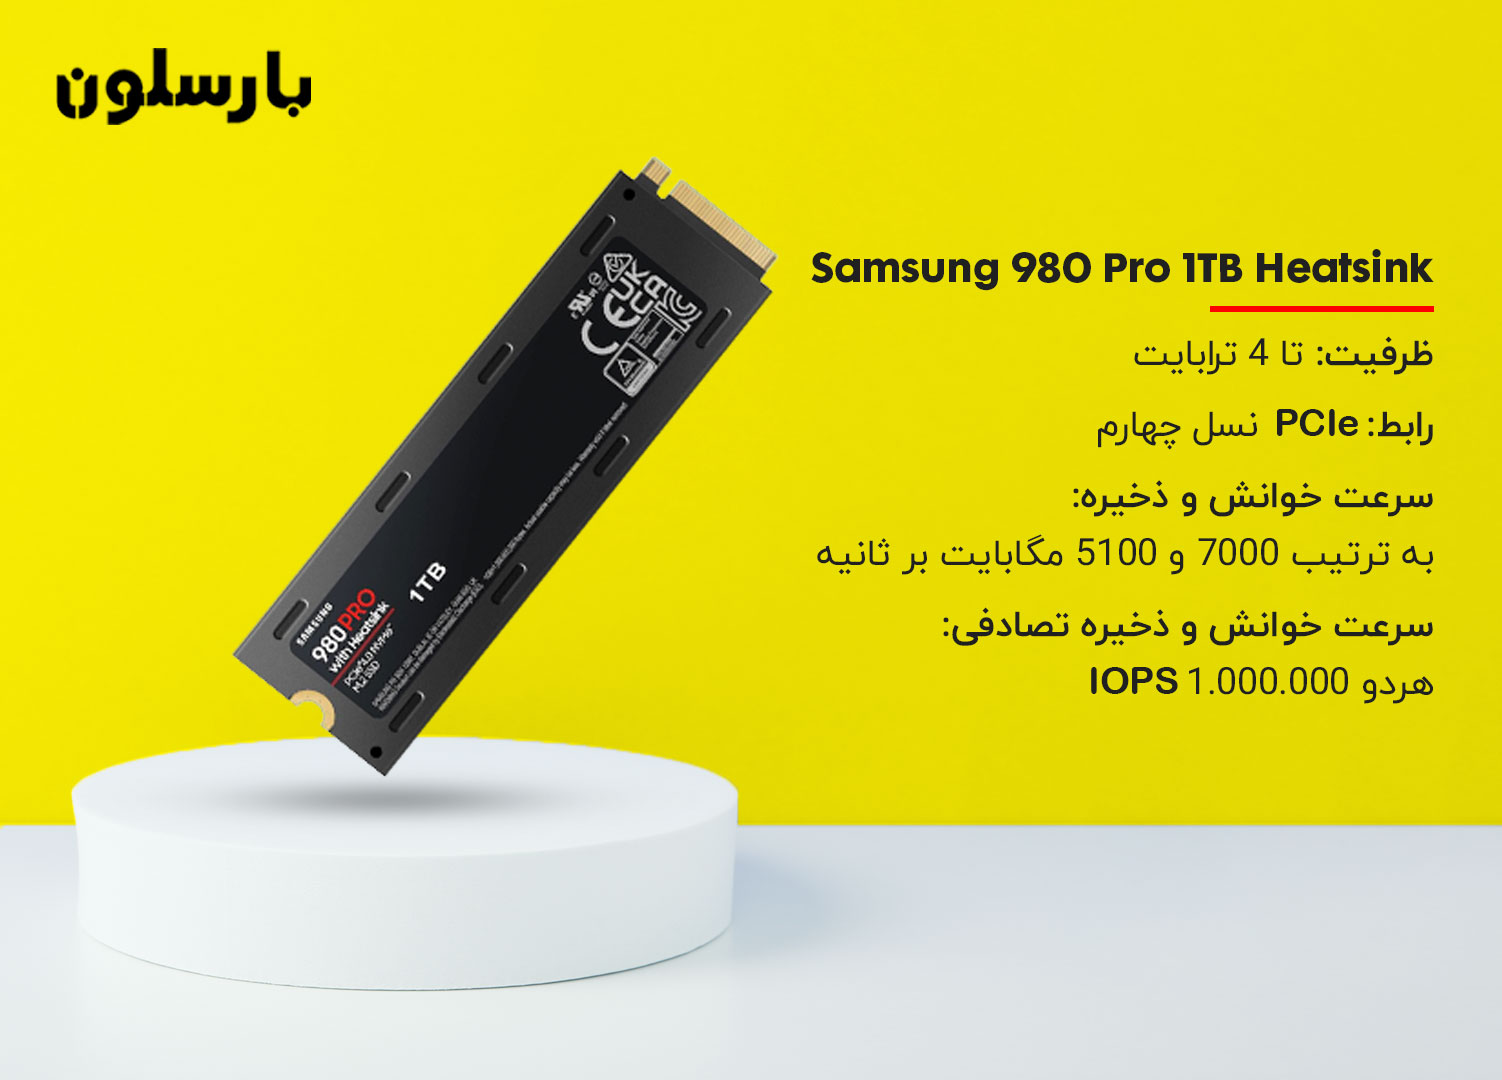 بهترین هارد قابل نصب روی کنسول بازی Samsung 980 Pro 1TB Heatsink